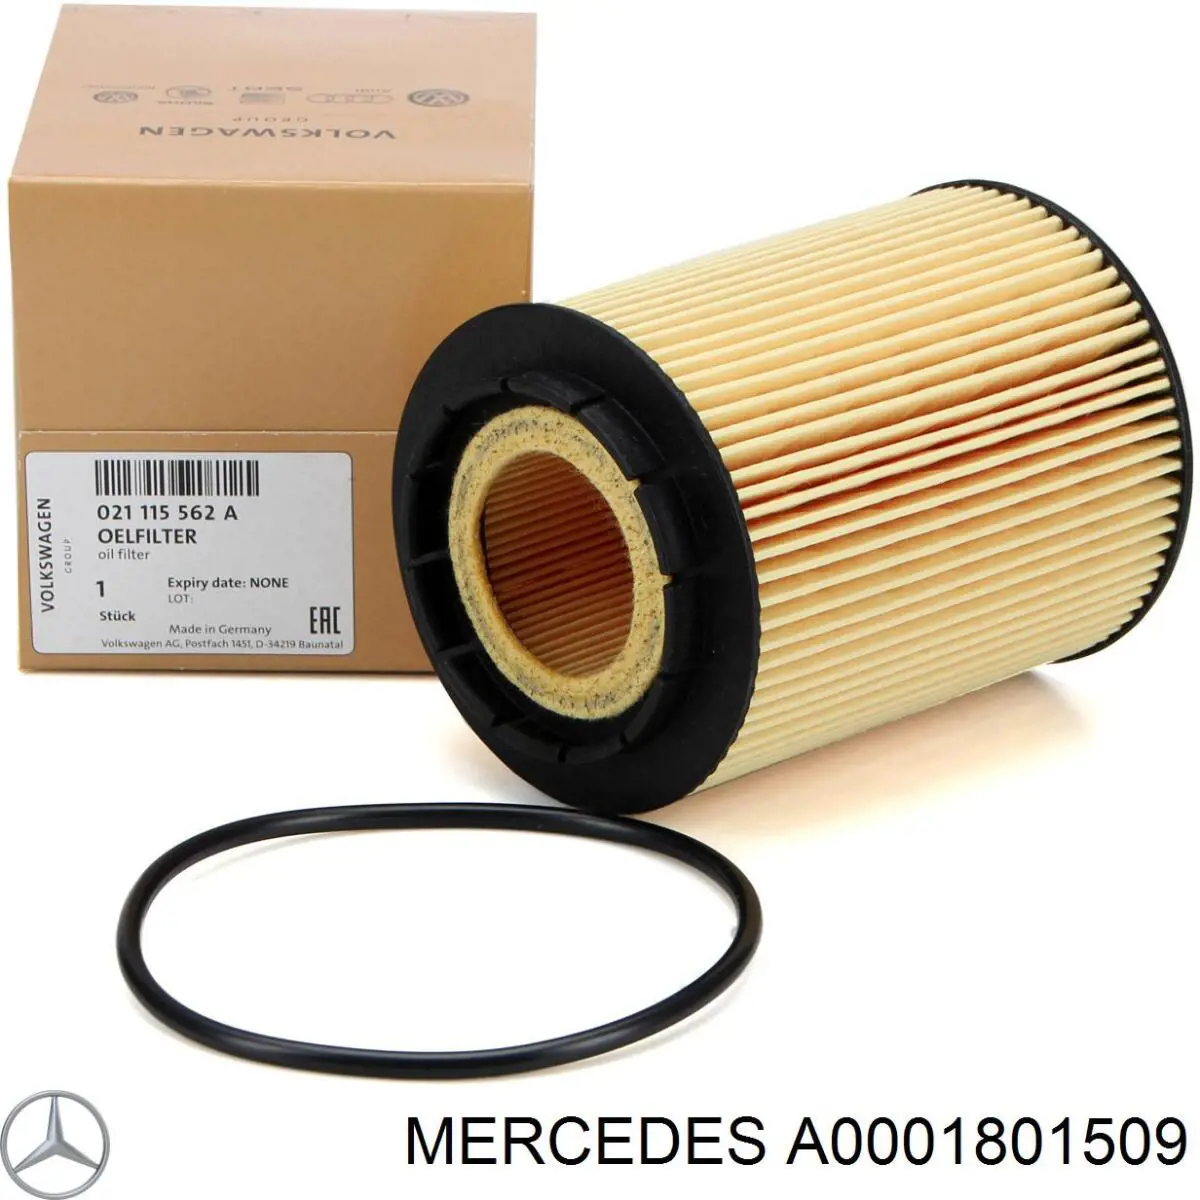 A0001801509 Mercedes filtro de aceite